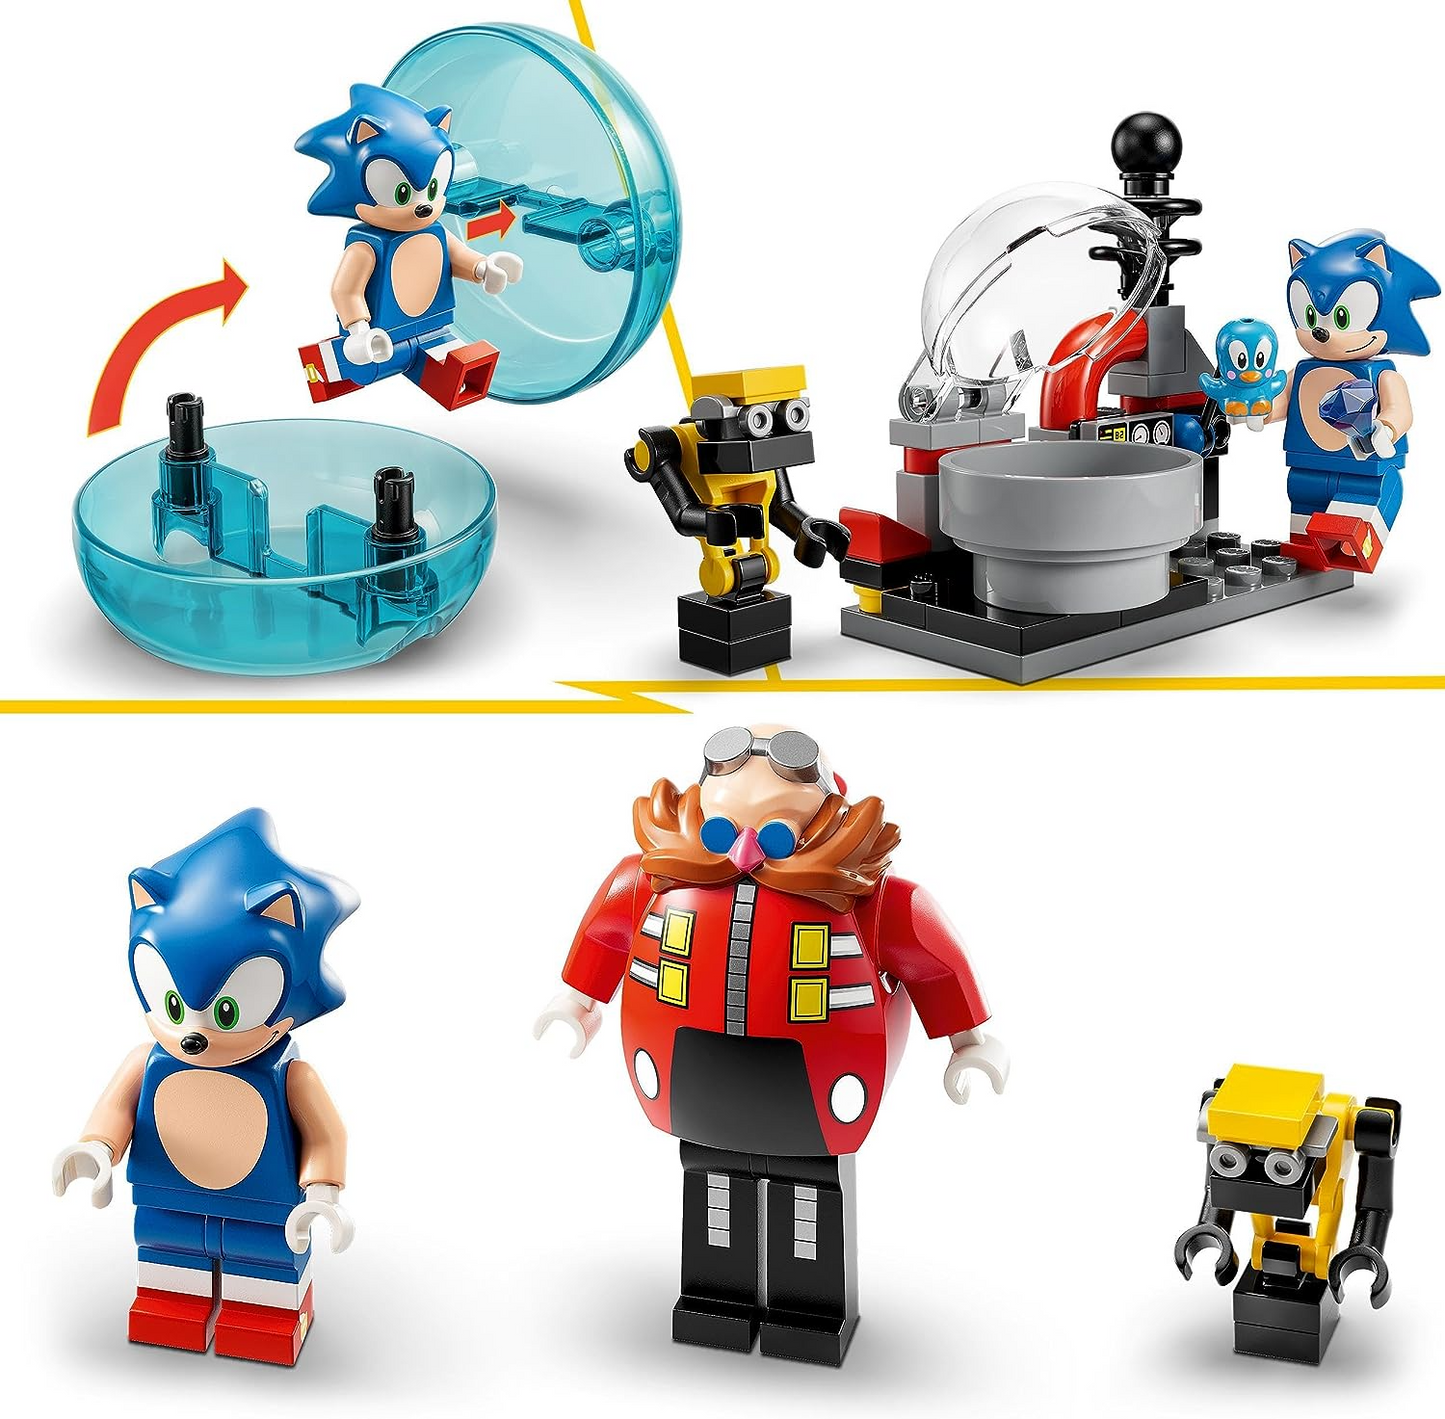 LEGO  76993 Sonic the Hedgehog Sonic vs. Eggman's Death Egg Robot Toy para crianças com Speed Sphere e Launcher do Sonic mais 6 personagens, presente para meninos e meninas